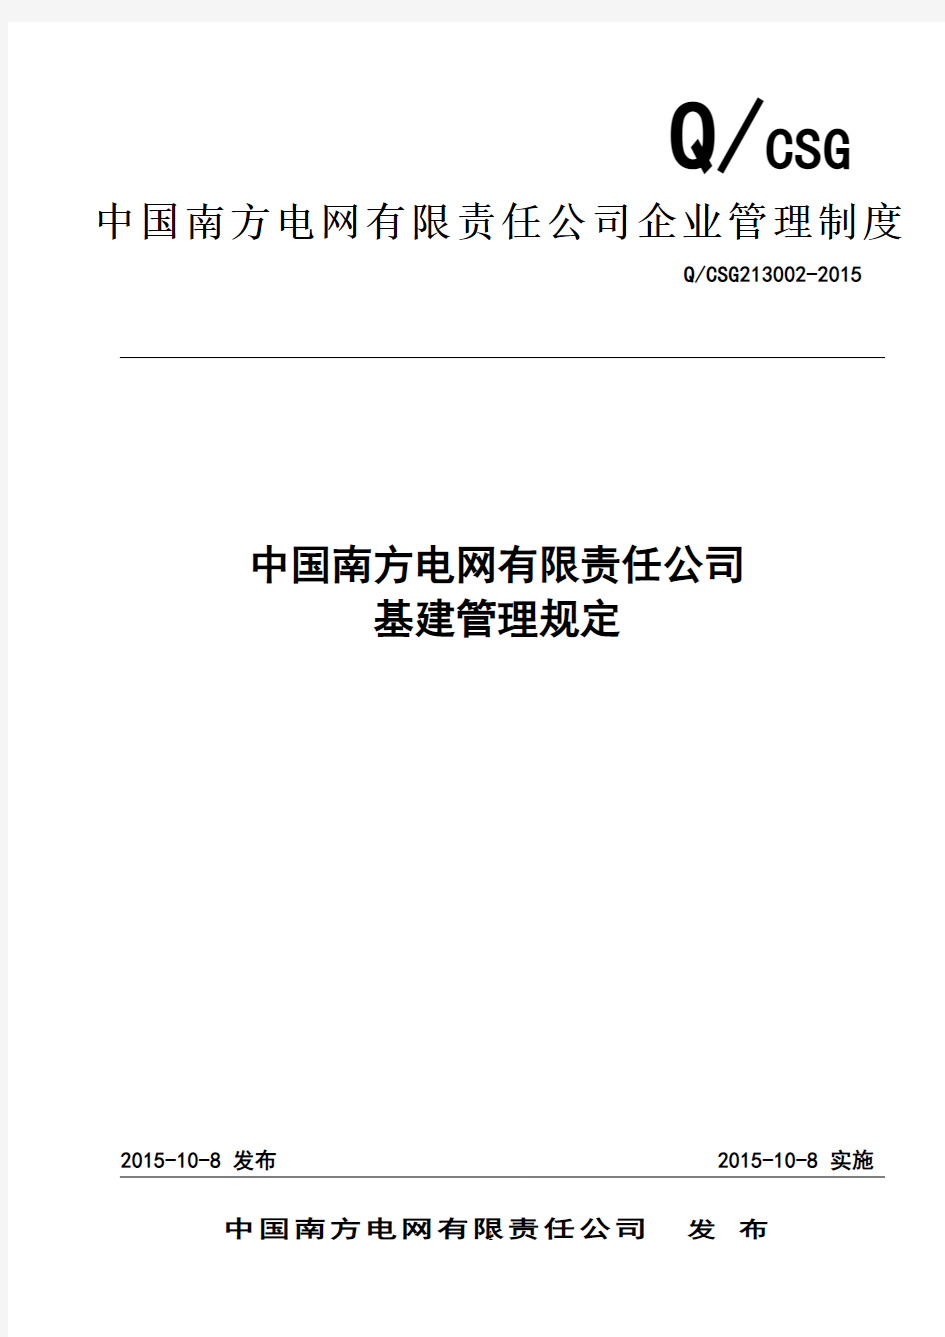 中国南方电网有限责任公司基建管理规定(修订)